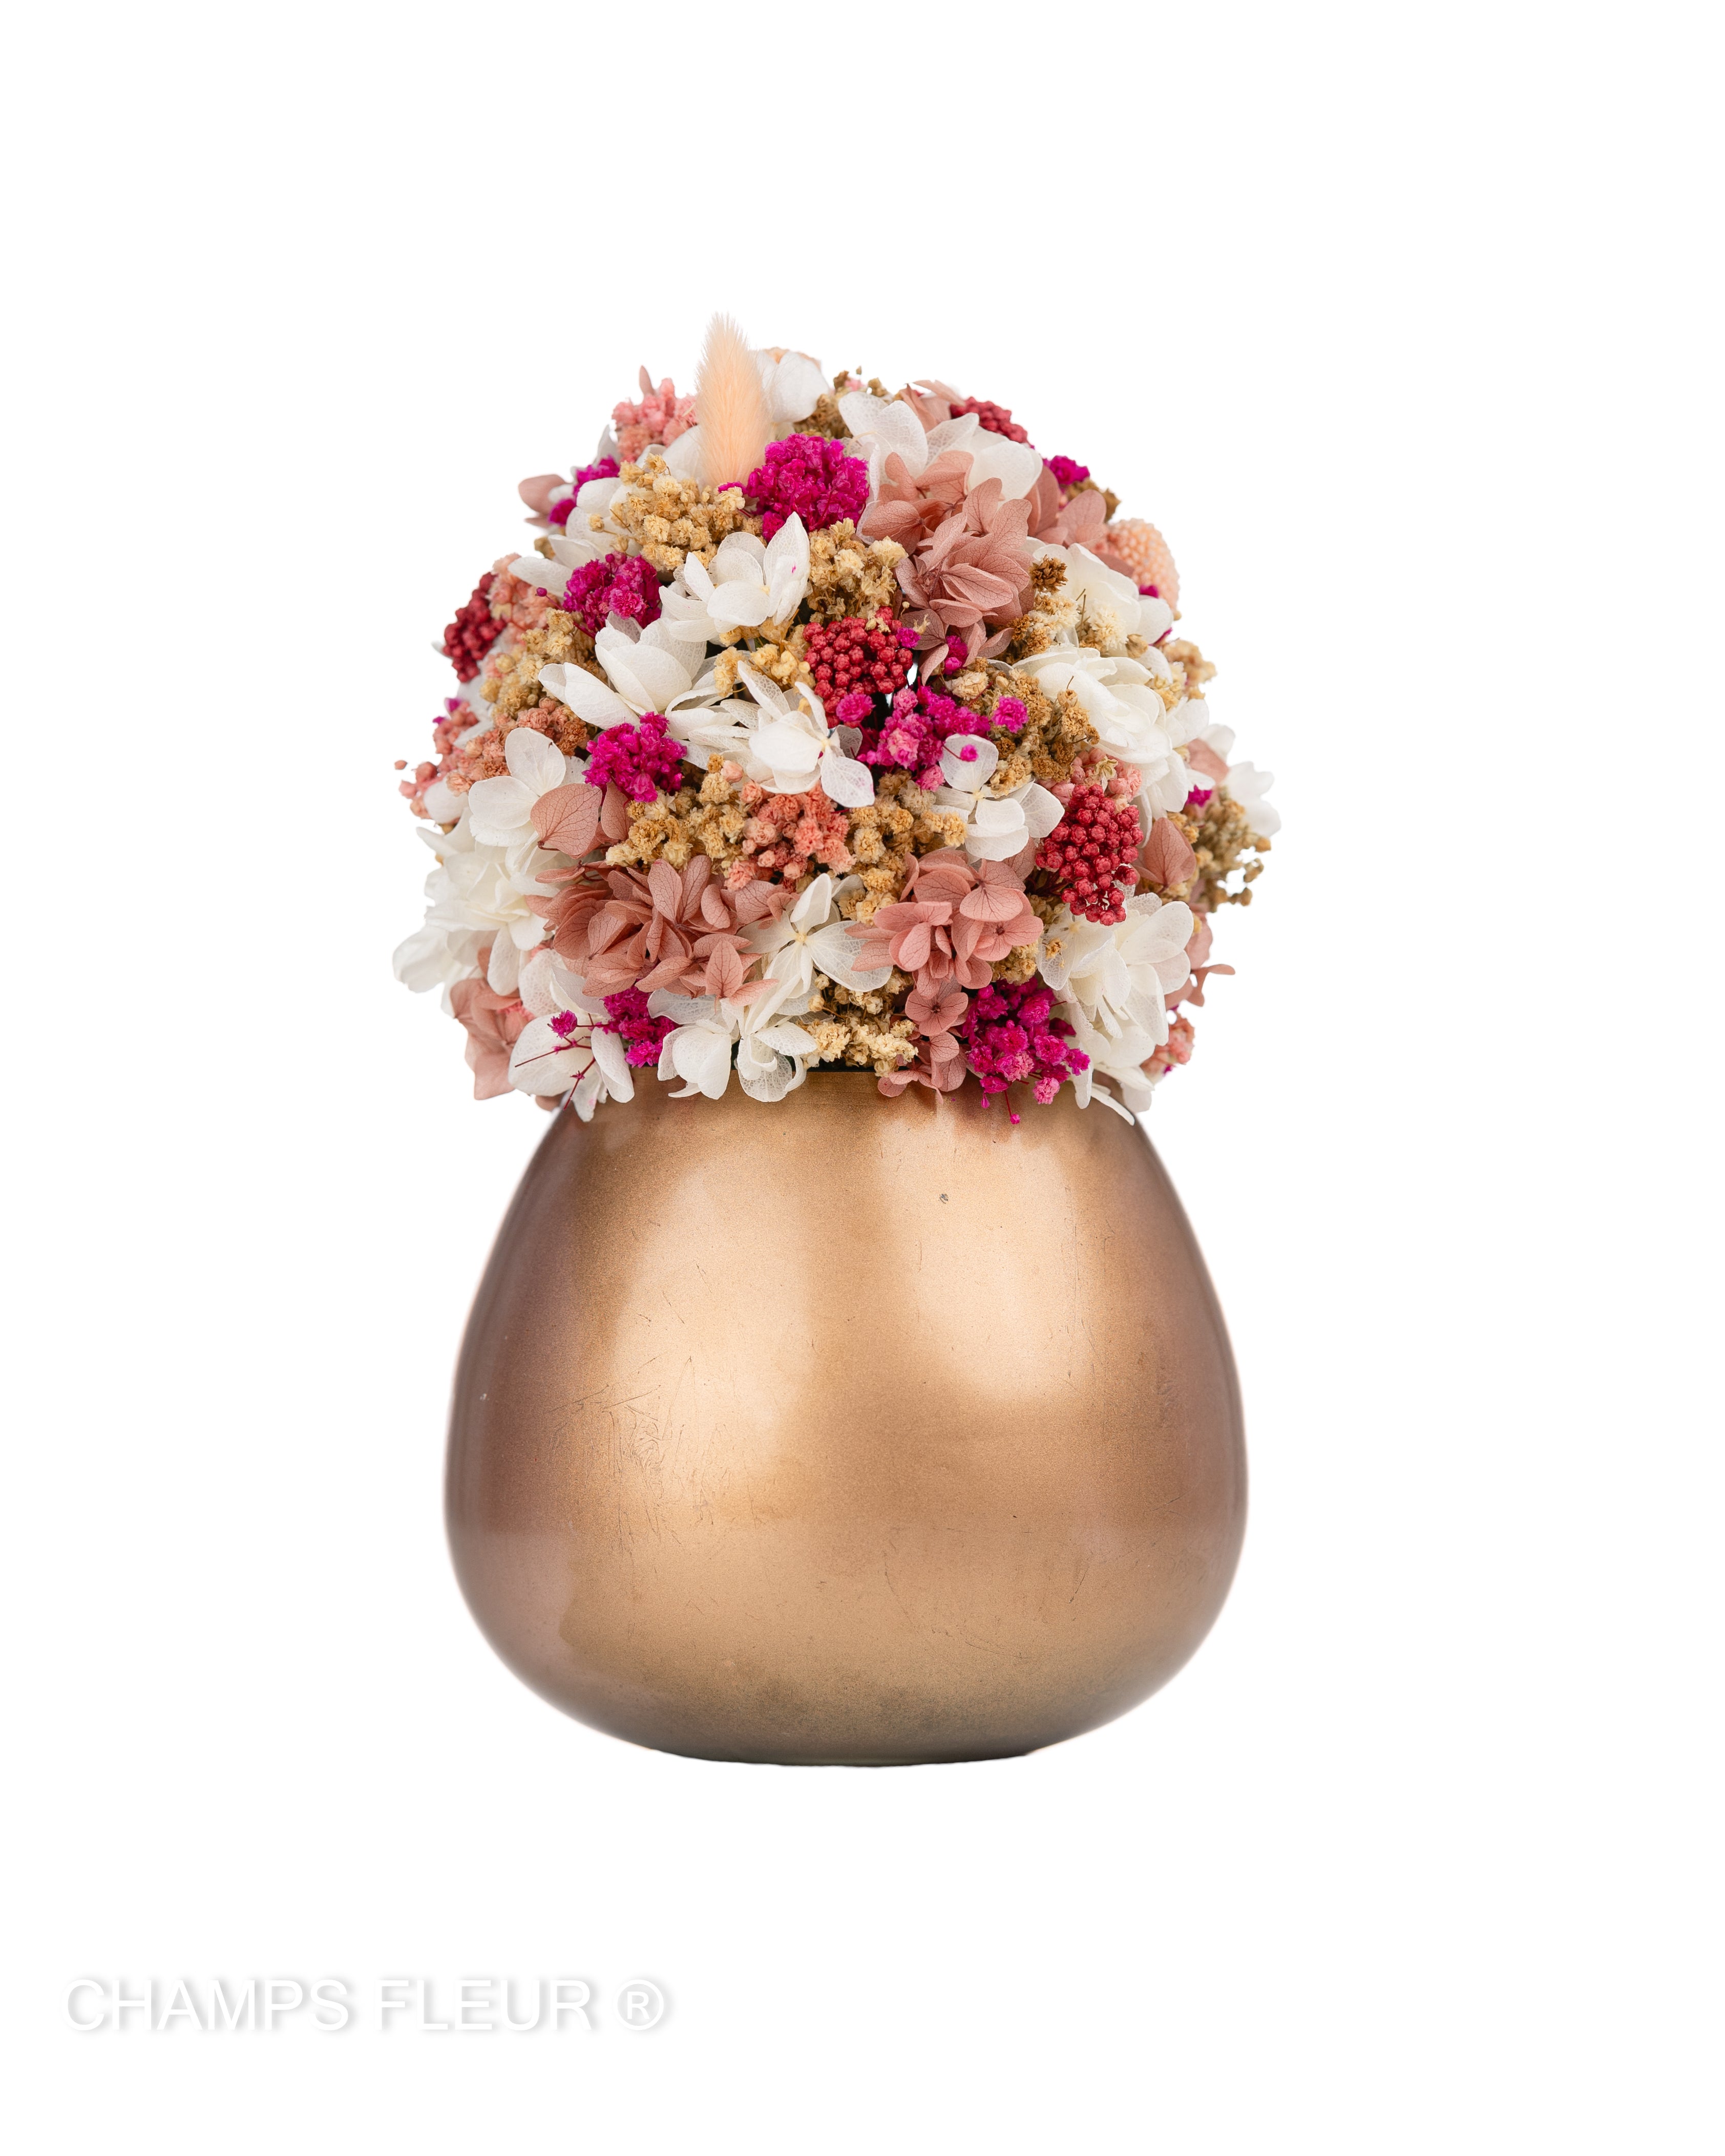 Grande - Pink Flowers in Rose Gold Vase